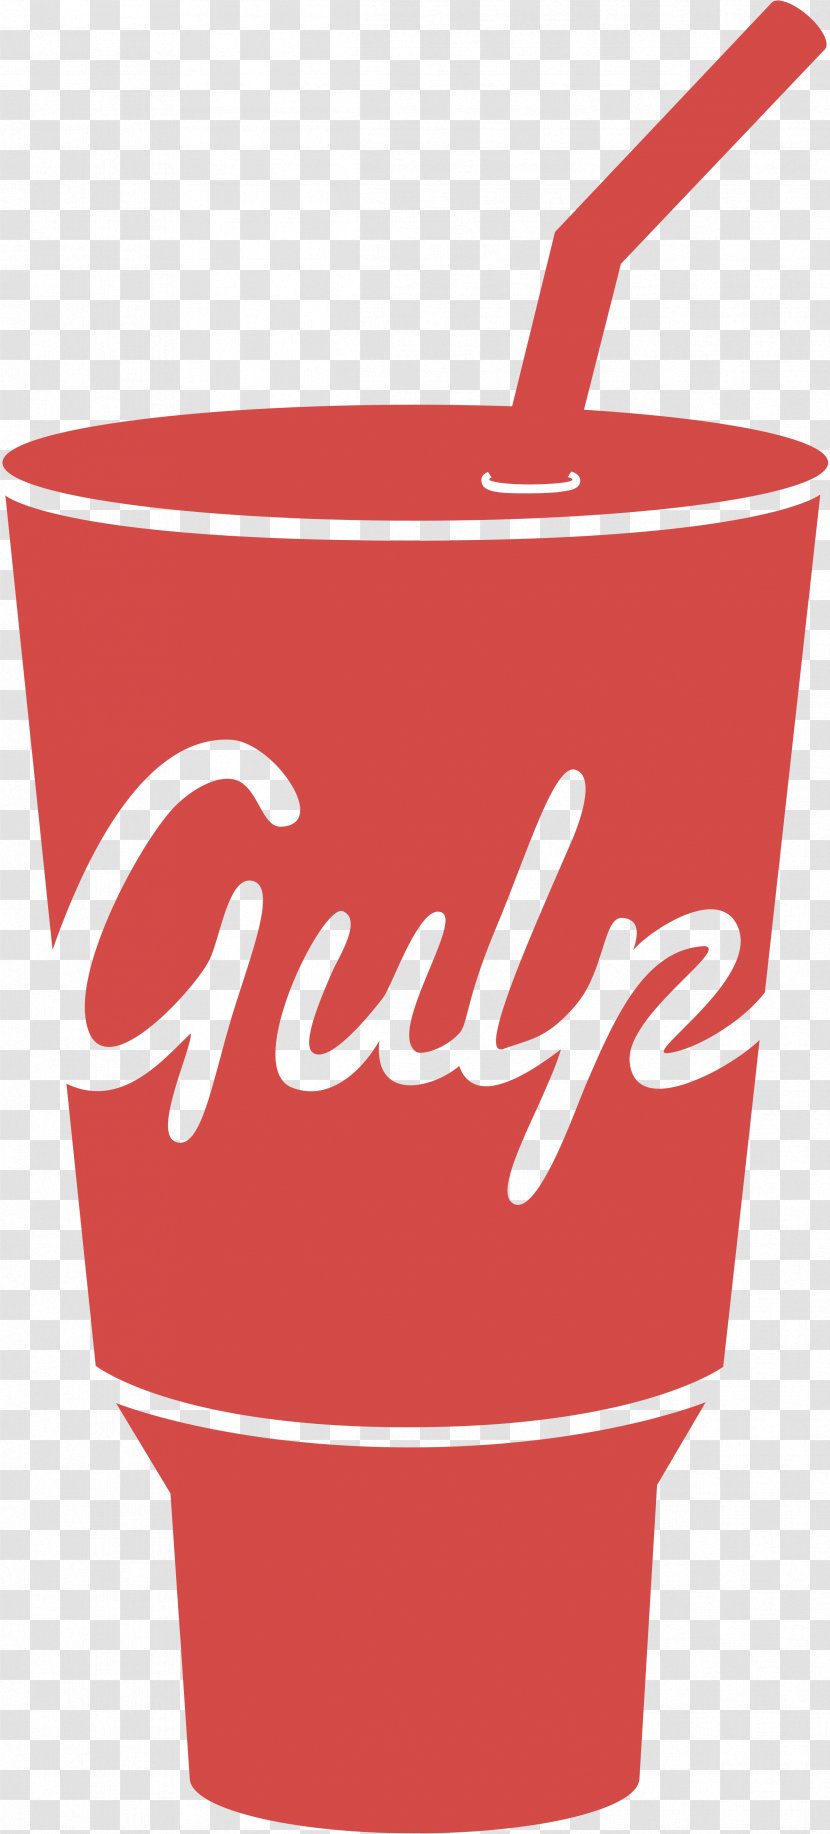 Clip Art Gulp.js Logo - Gulpjs - Crepe Vector Transparent PNG